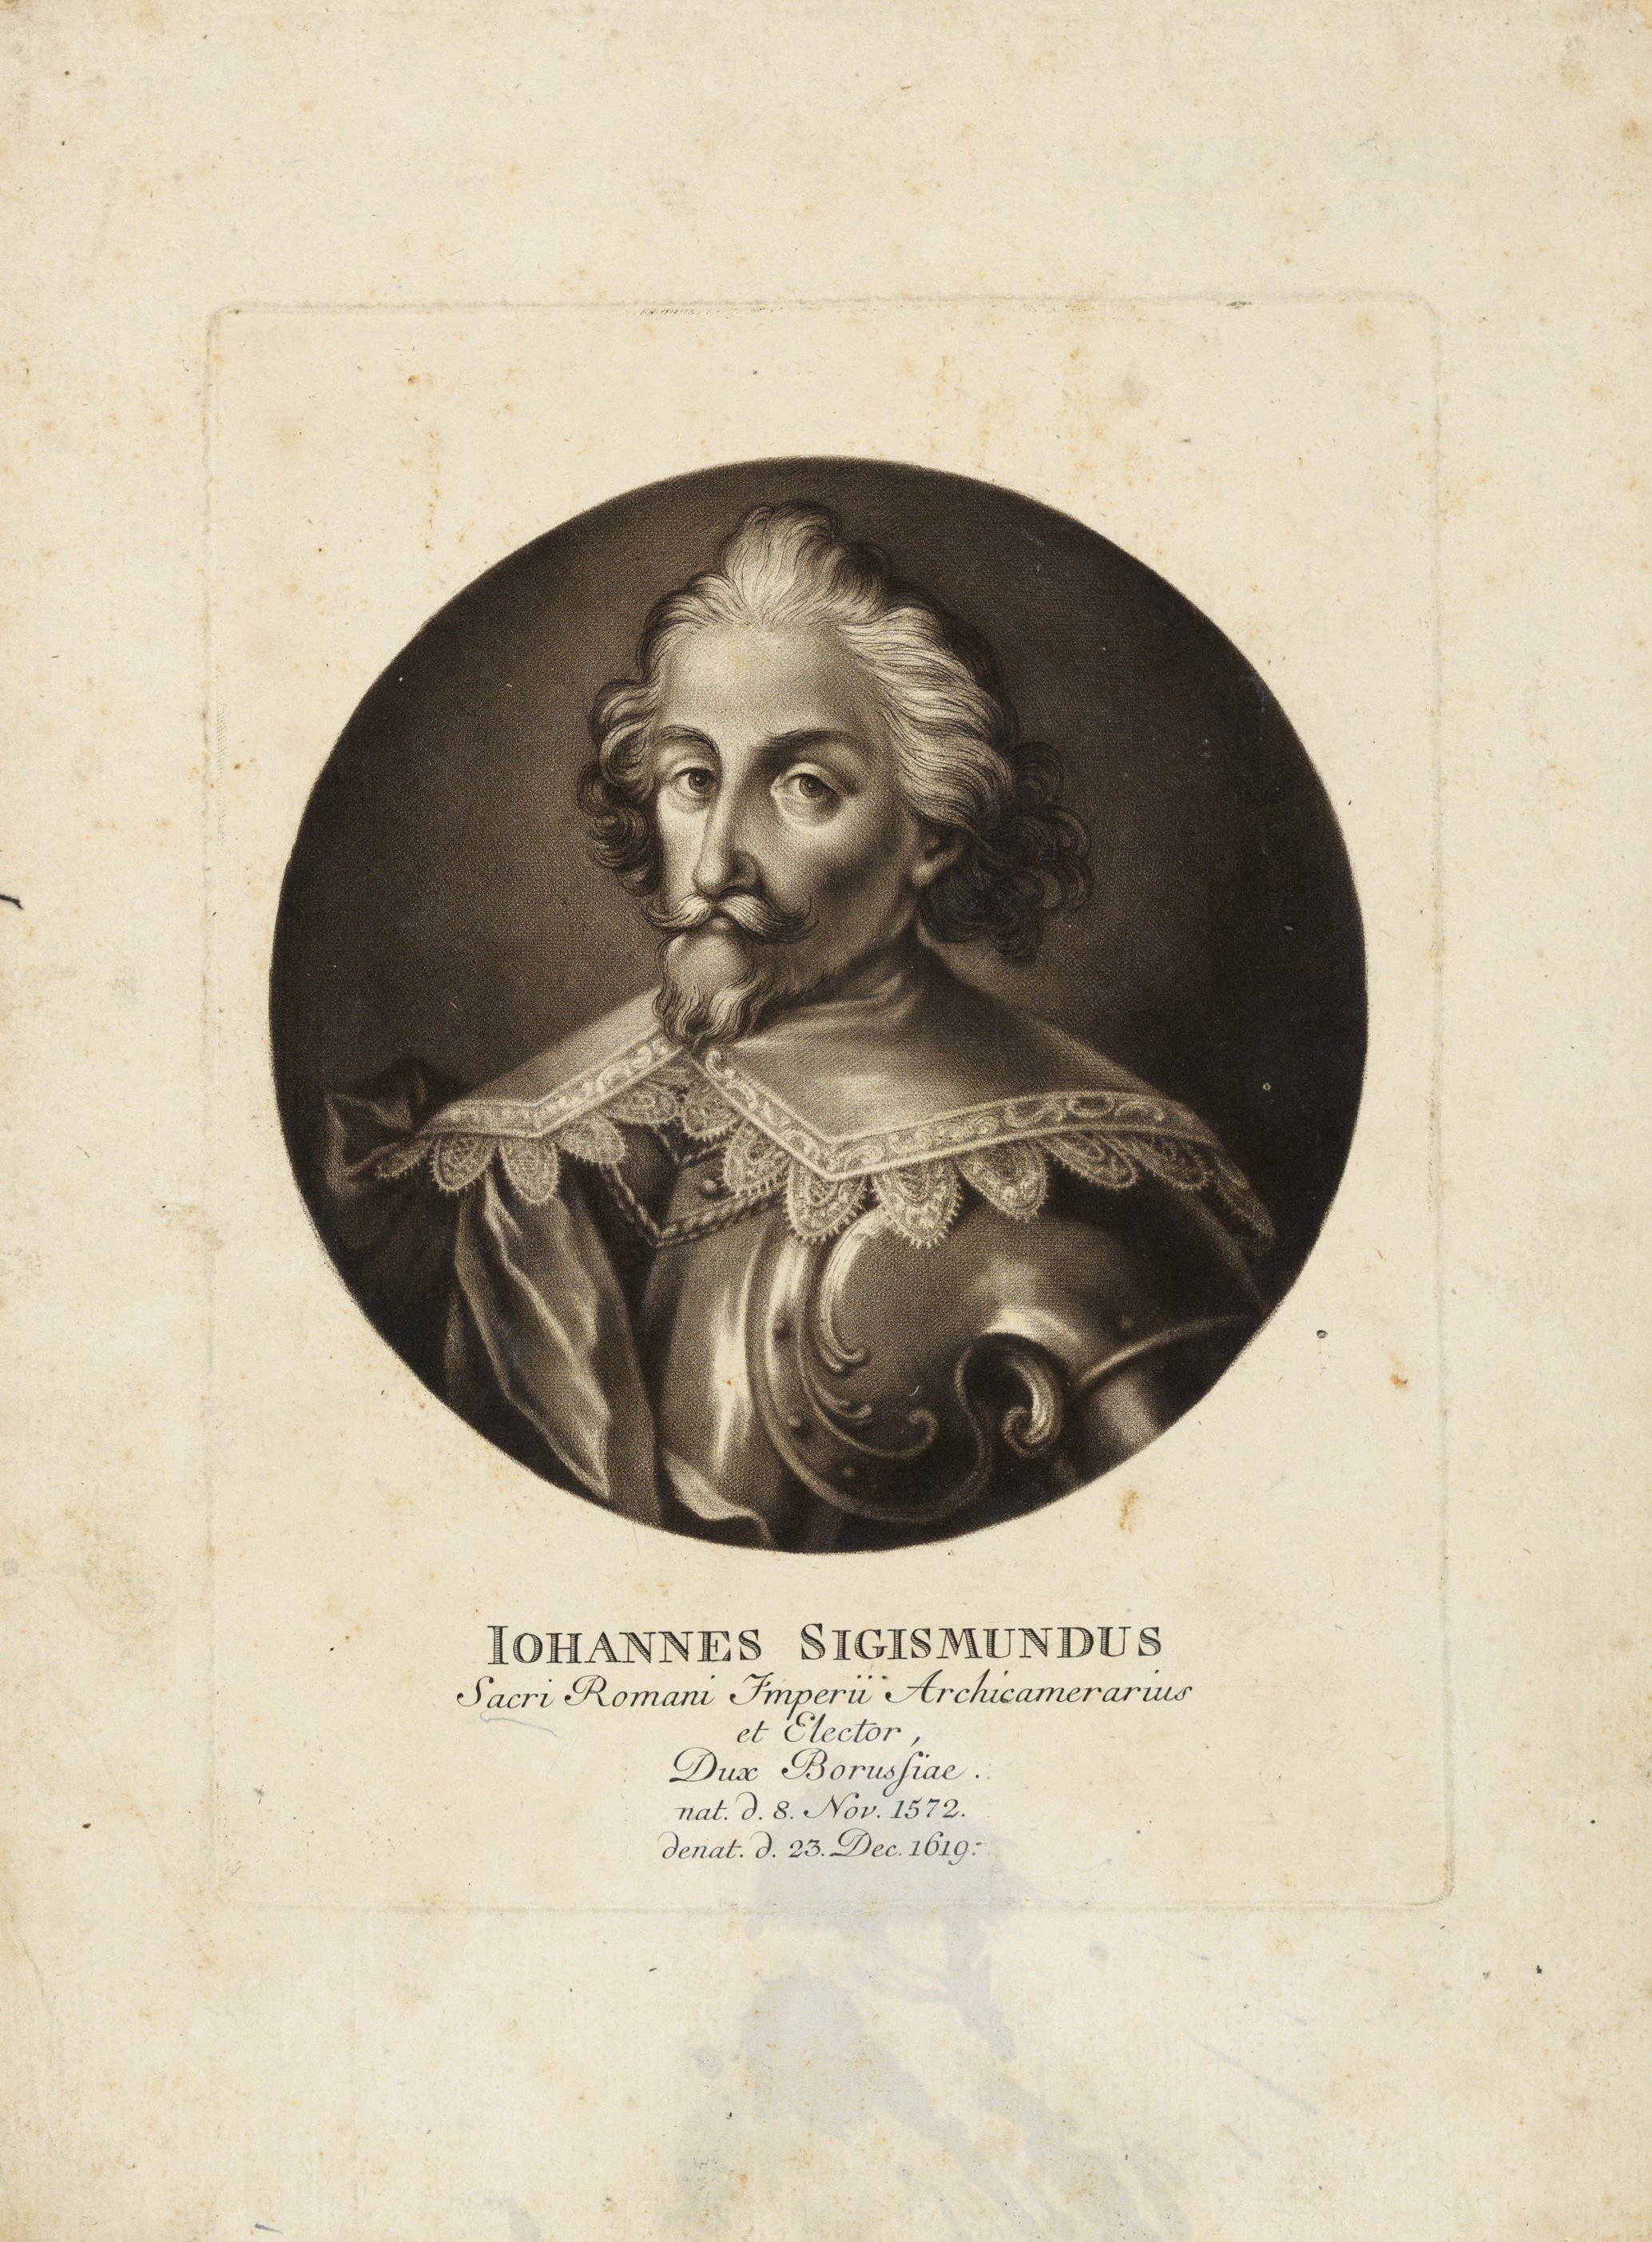 Kurfürst Johann Sigismund von Brandenburg, frühes 17. Jahrhundert (Städtisches Museum Schloss Rheydt CC BY)